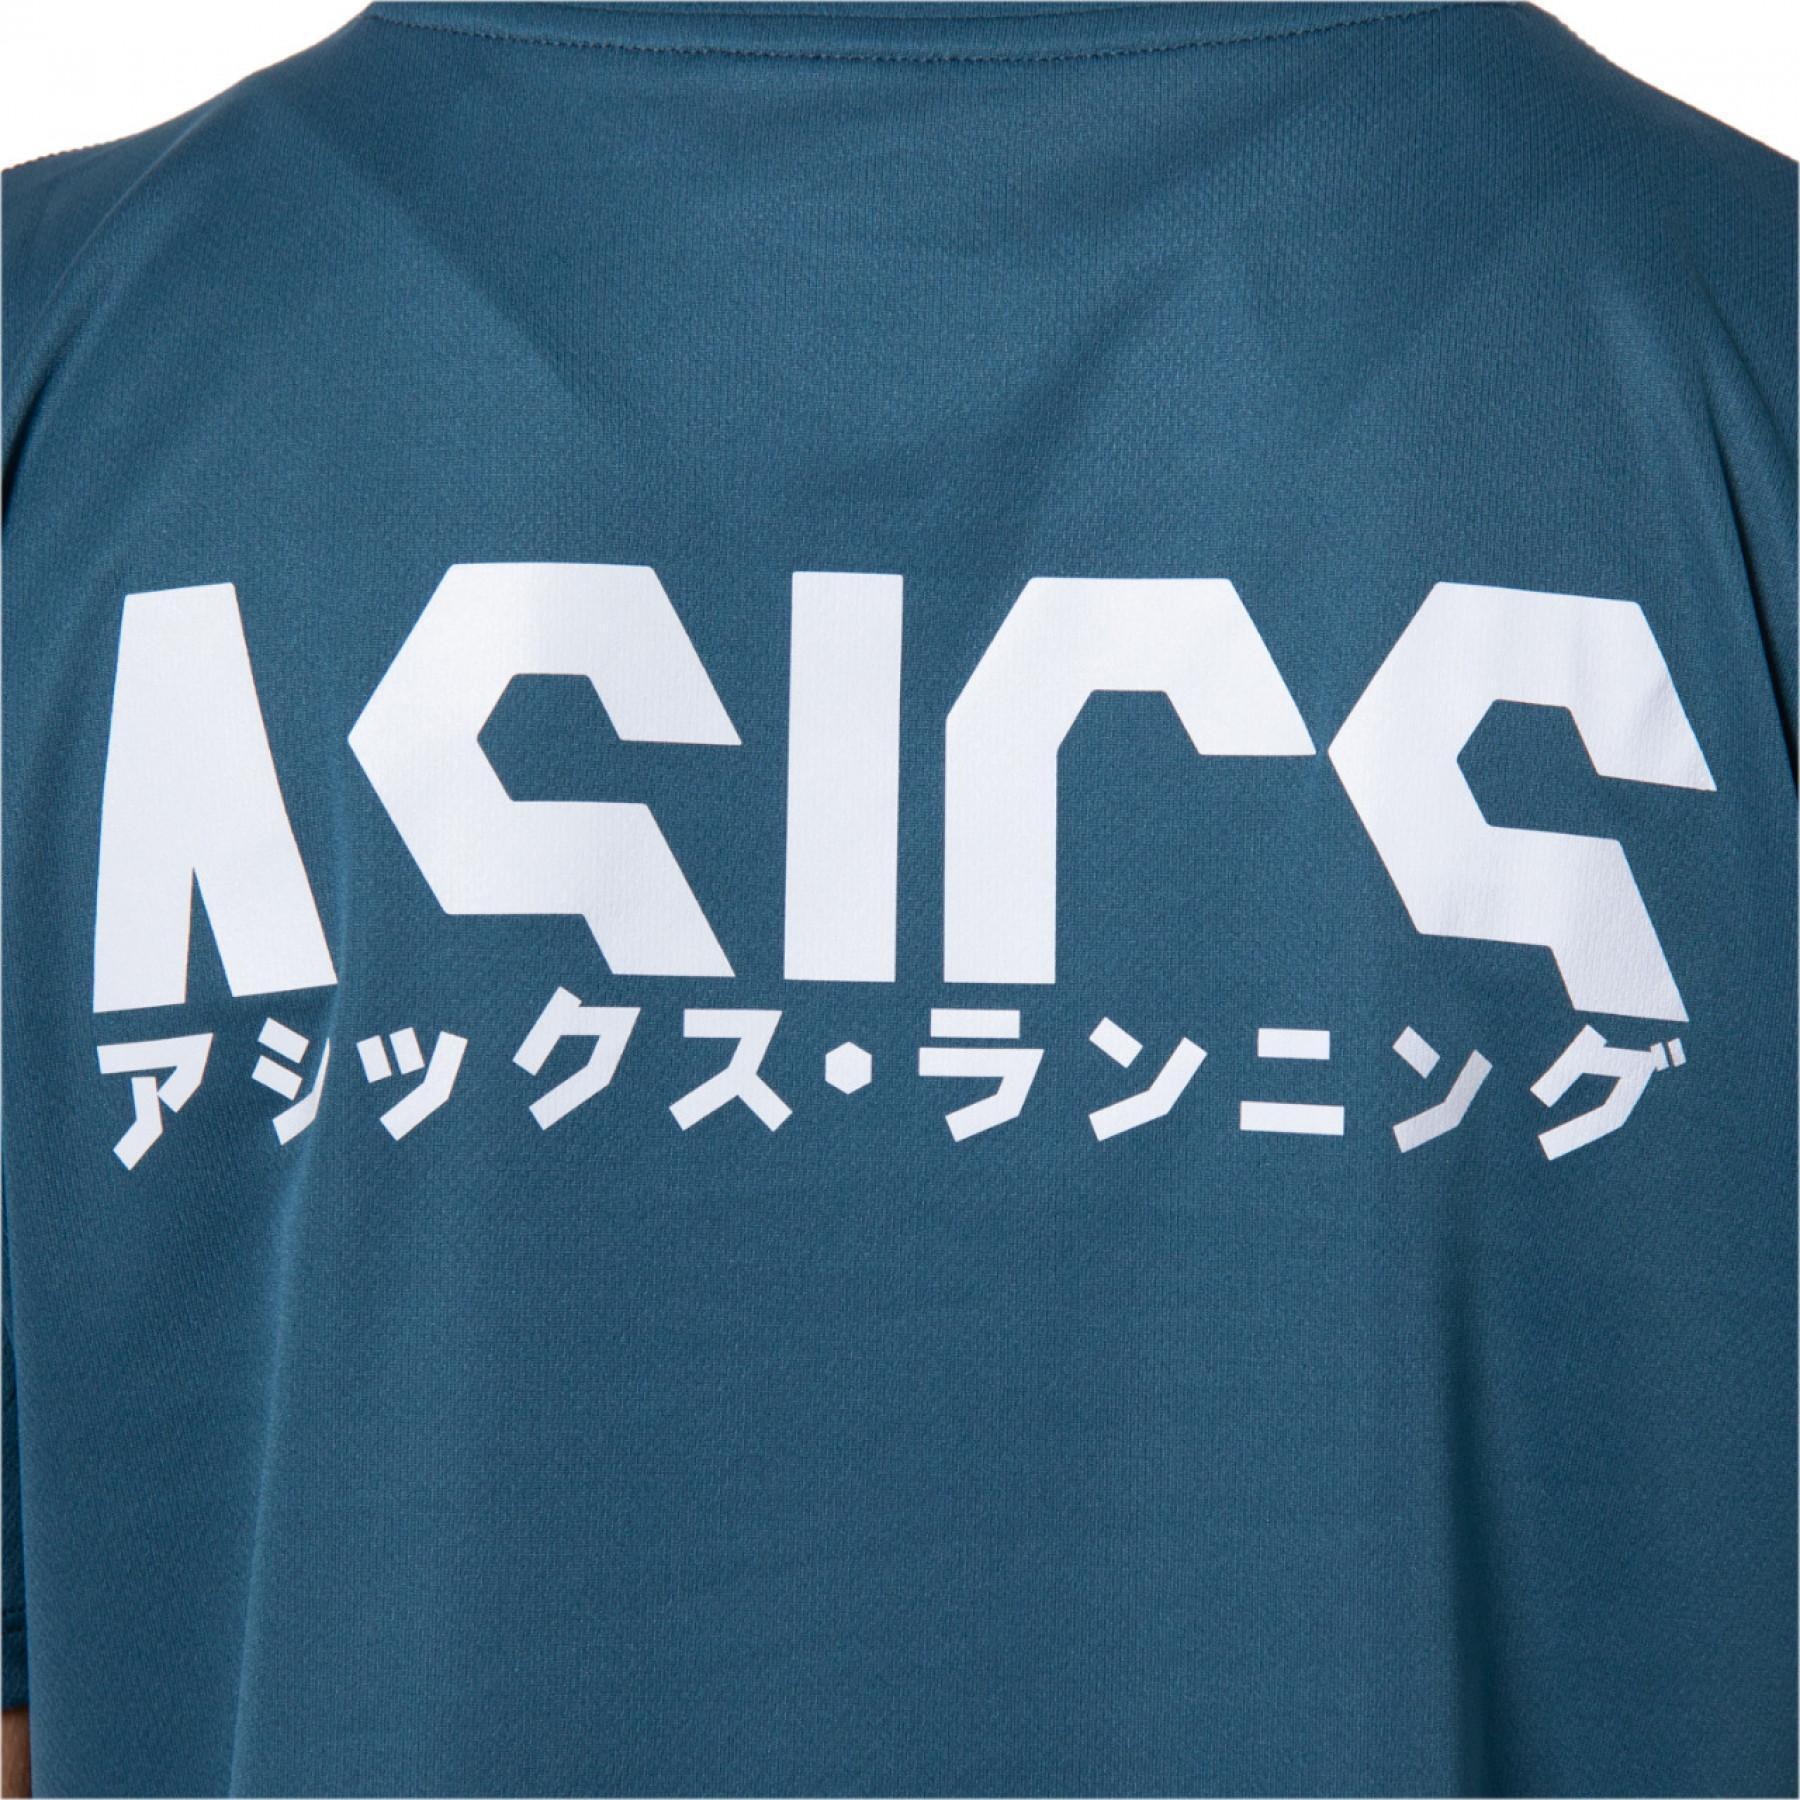 T-shirt vrouw Asics Katakana